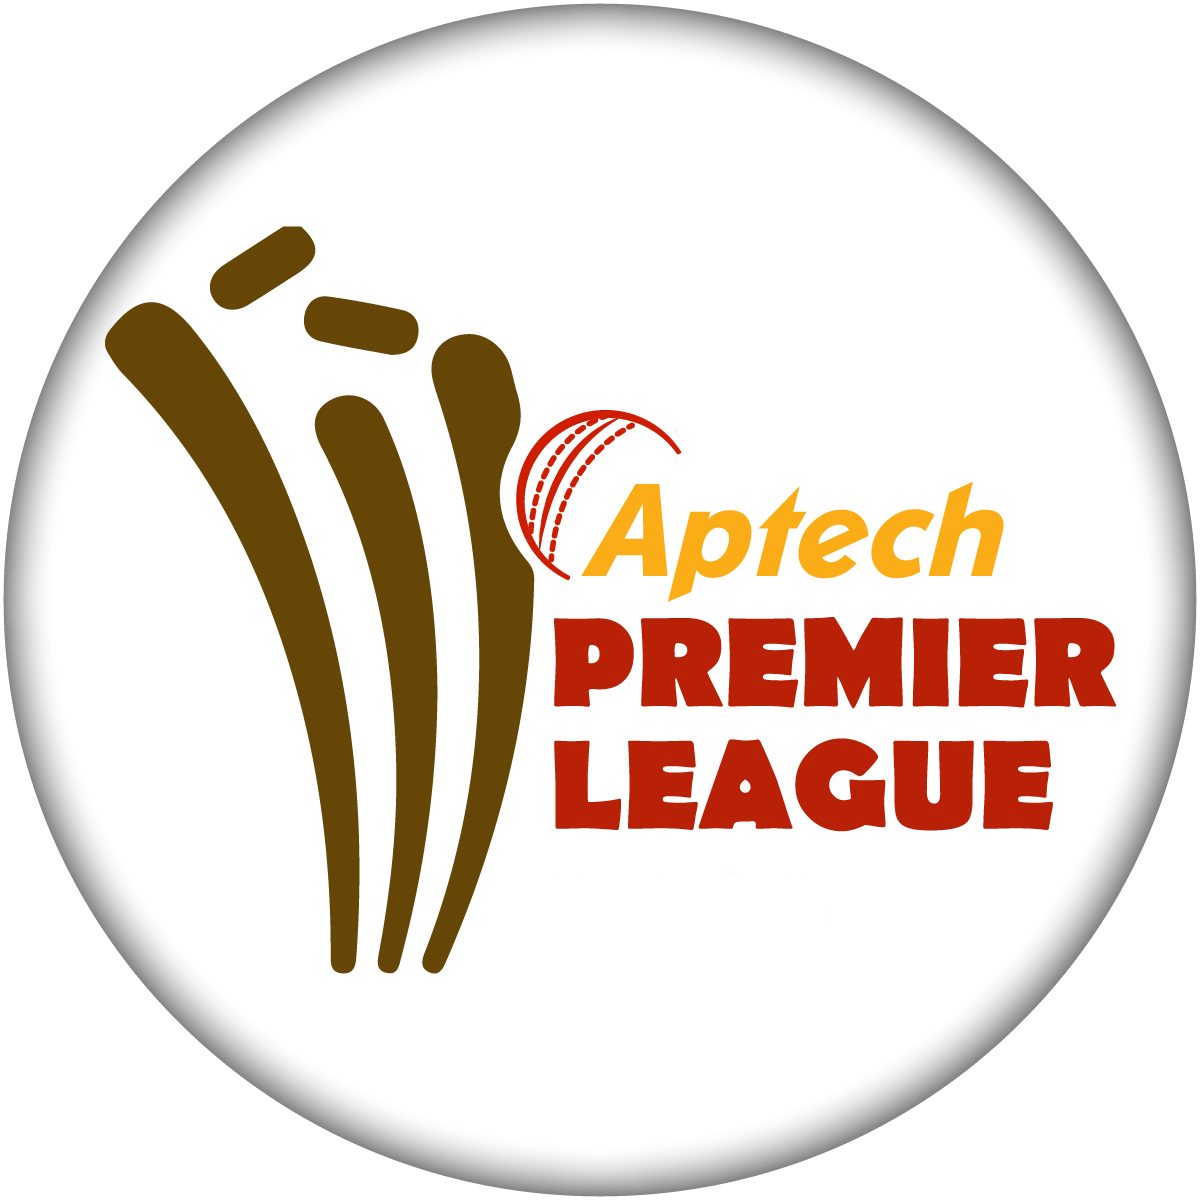 Aptech Premier League